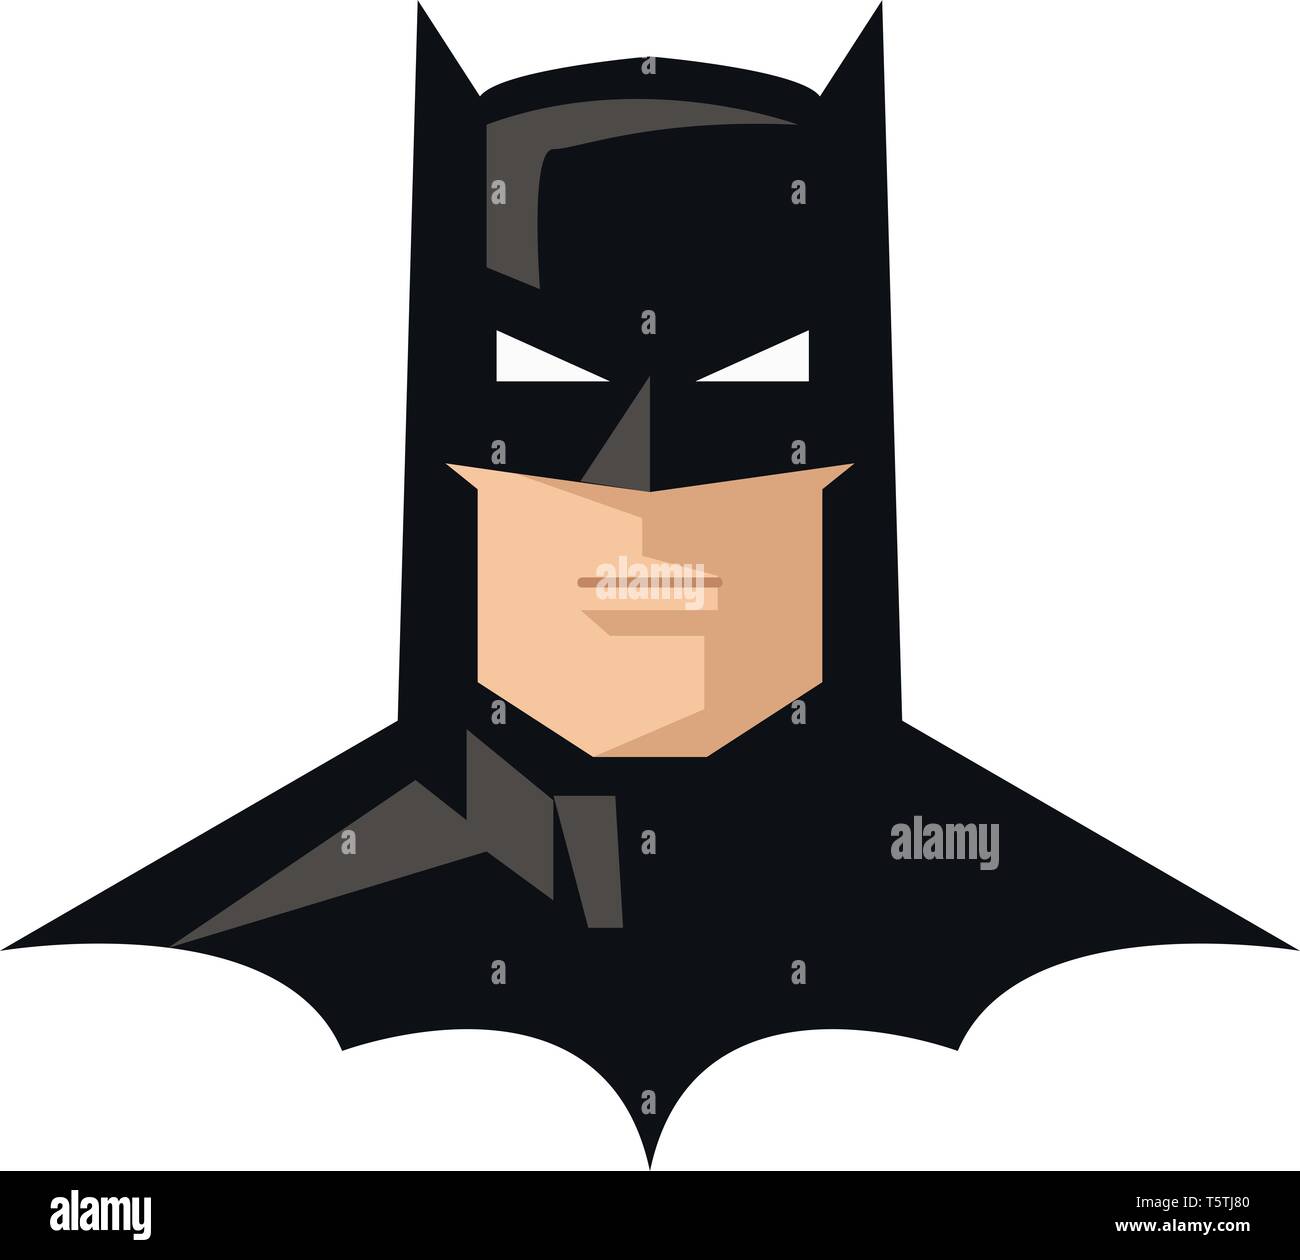 Batman vector vectors hi-res stock photography and images - Alamy